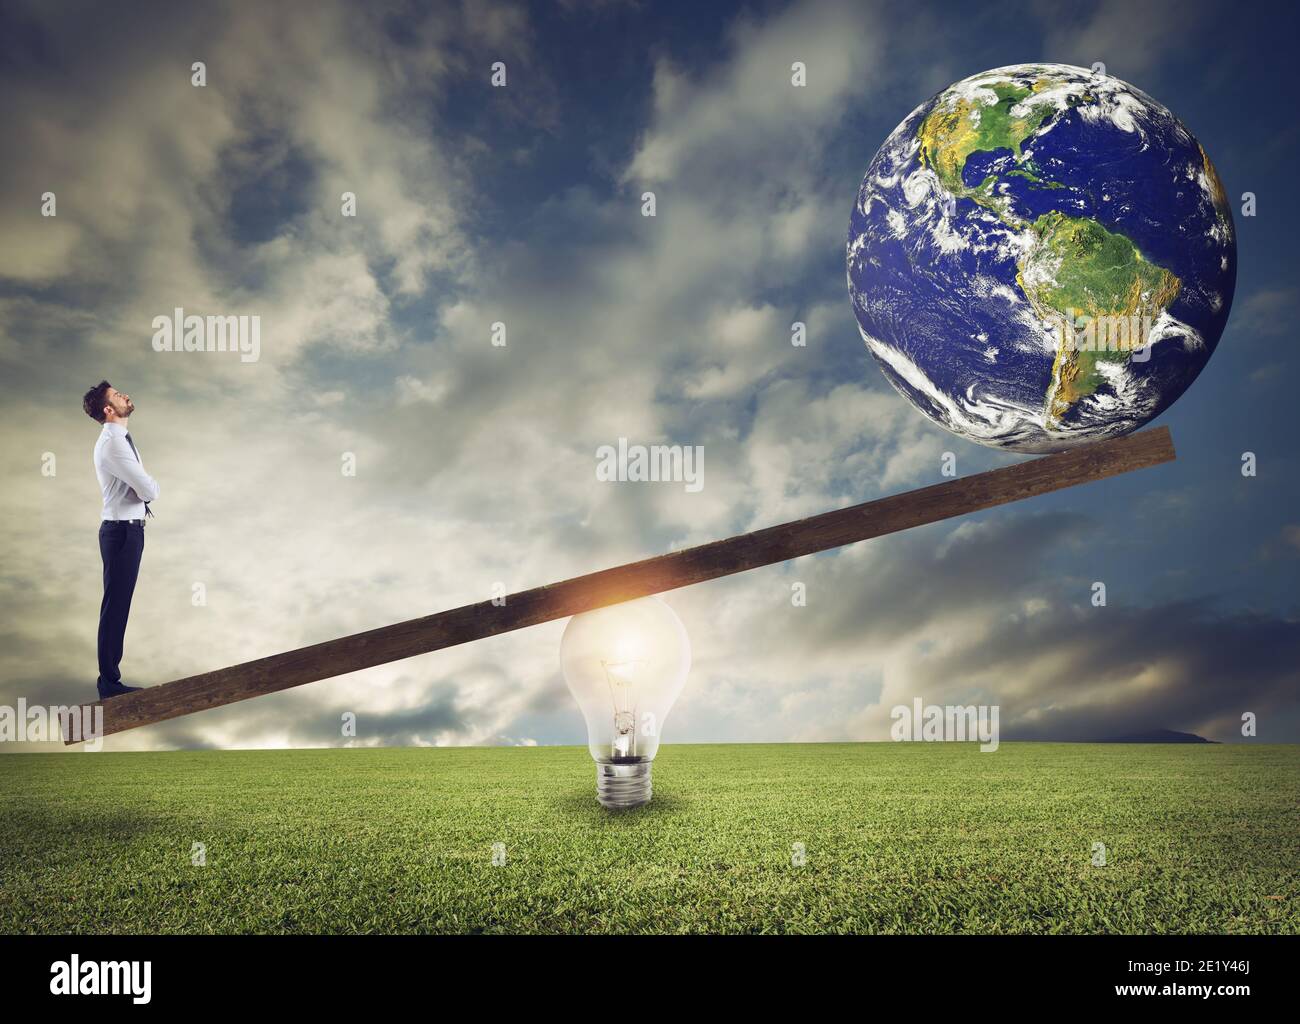 Homme d'affaires utilise un levier publicitaire d'ampoule pour soulever le monde. Terre fournie par la NASA. Banque D'Images